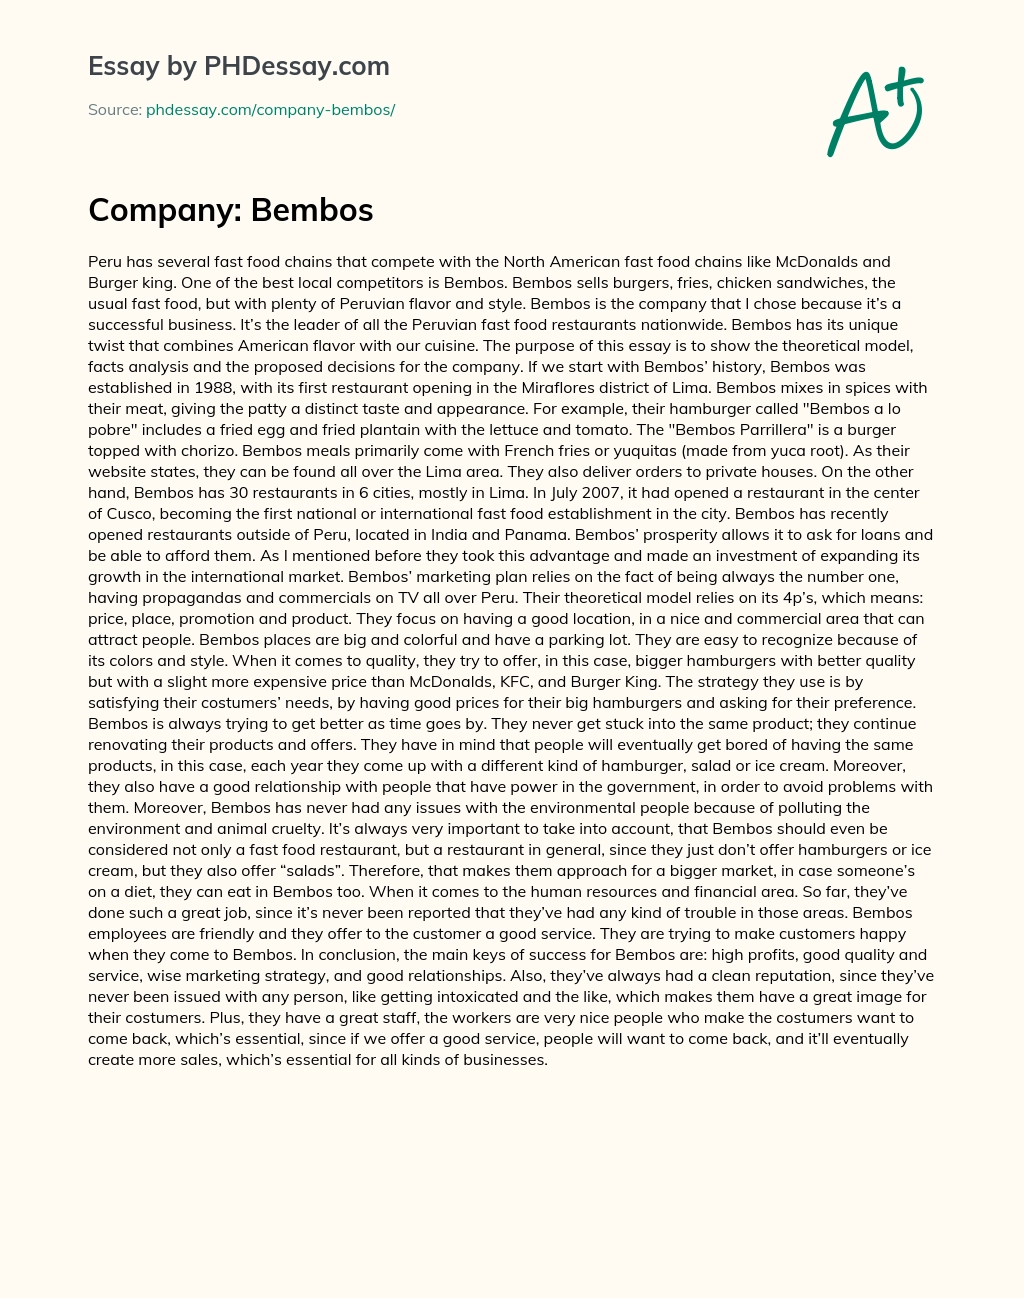 Company: Bembos essay